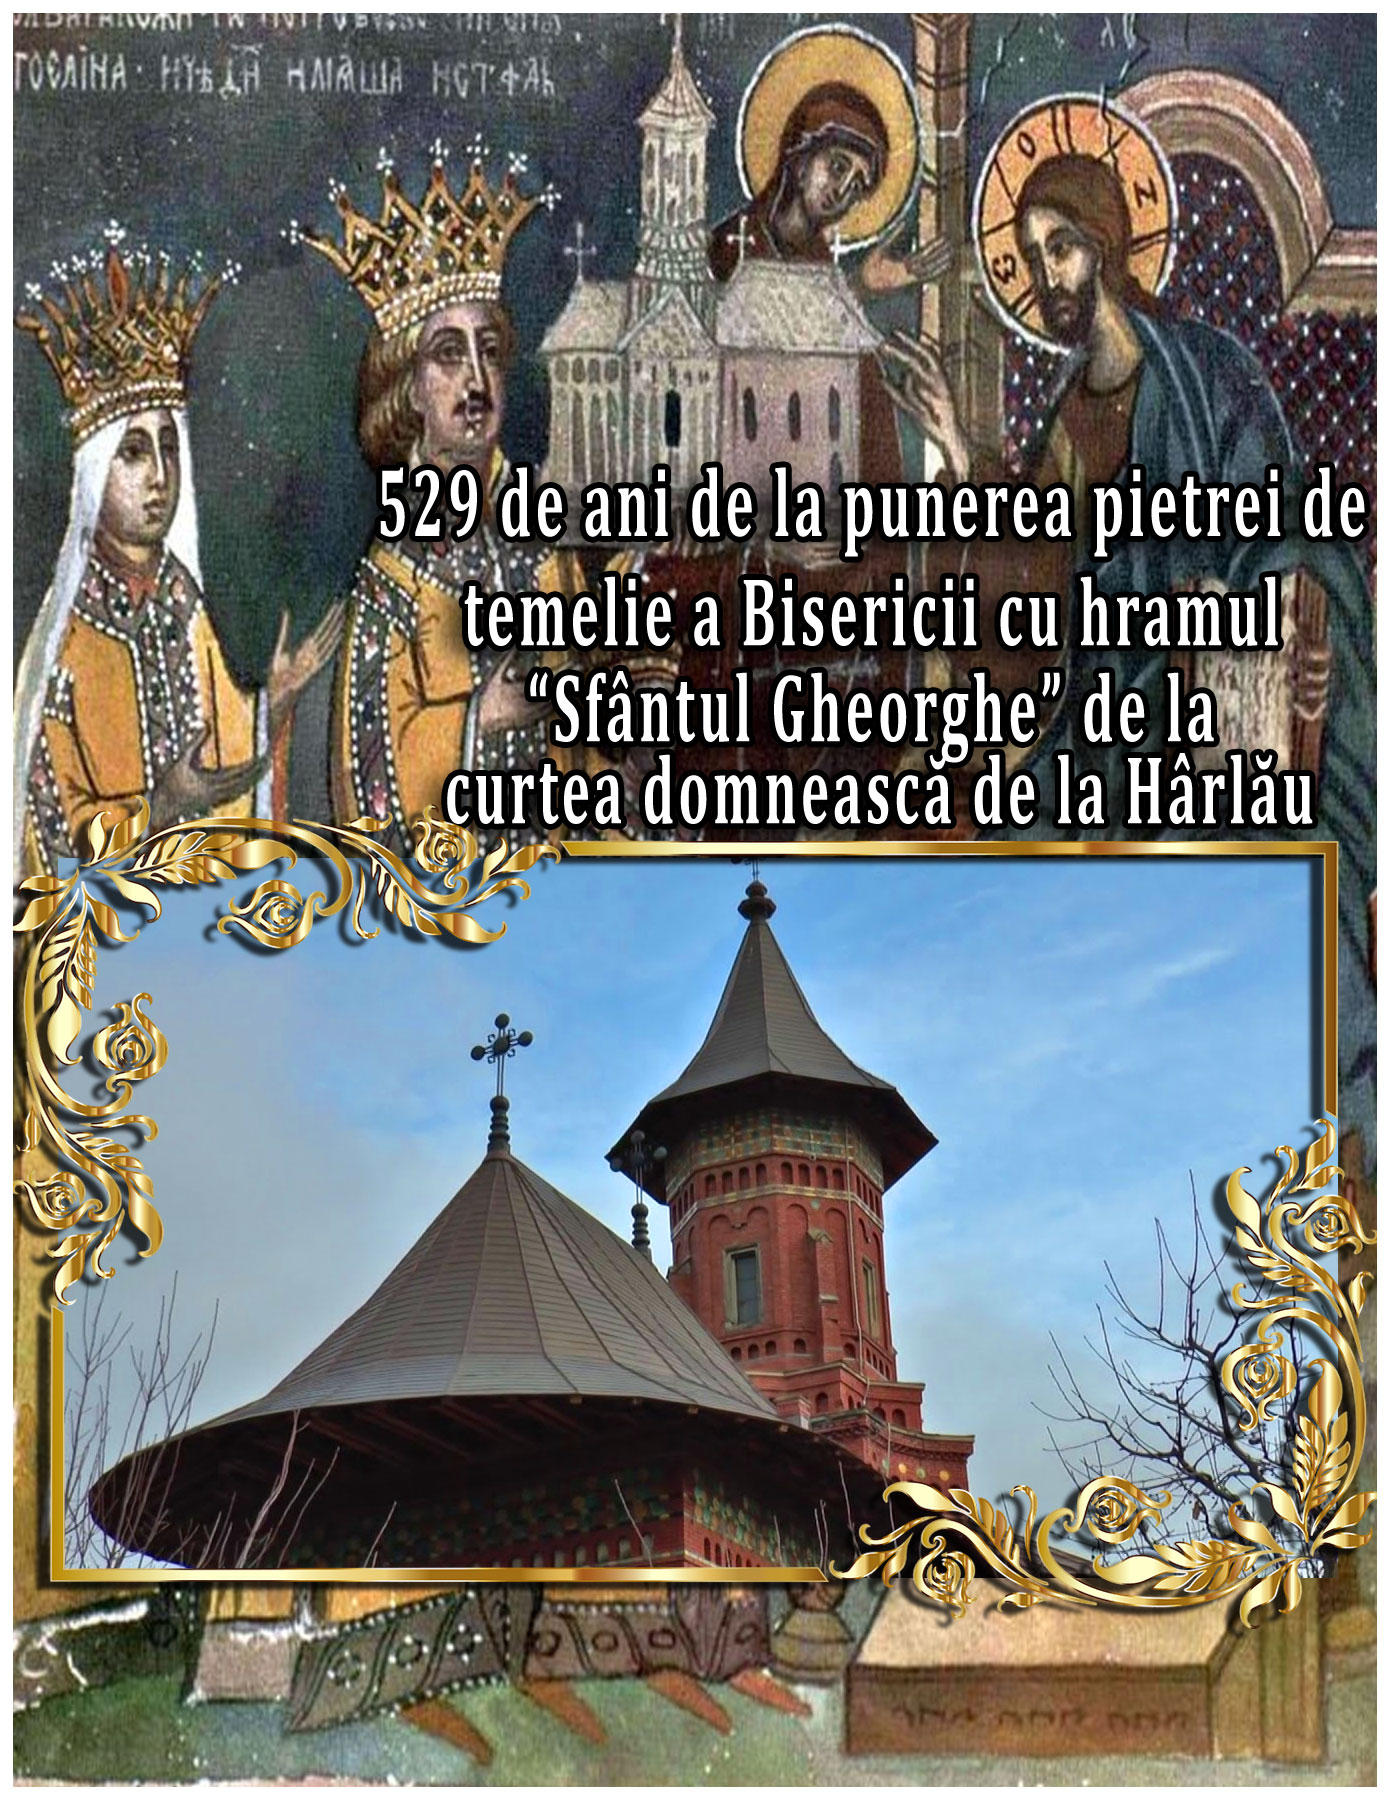 La 30 Mai 1492 incepea constructia Bisericii cu hramul “Sfântul Gheorghe” de la curtea domnească de la Hârlău, unul dintre primele monumente moldovenești cu pictură exterioară